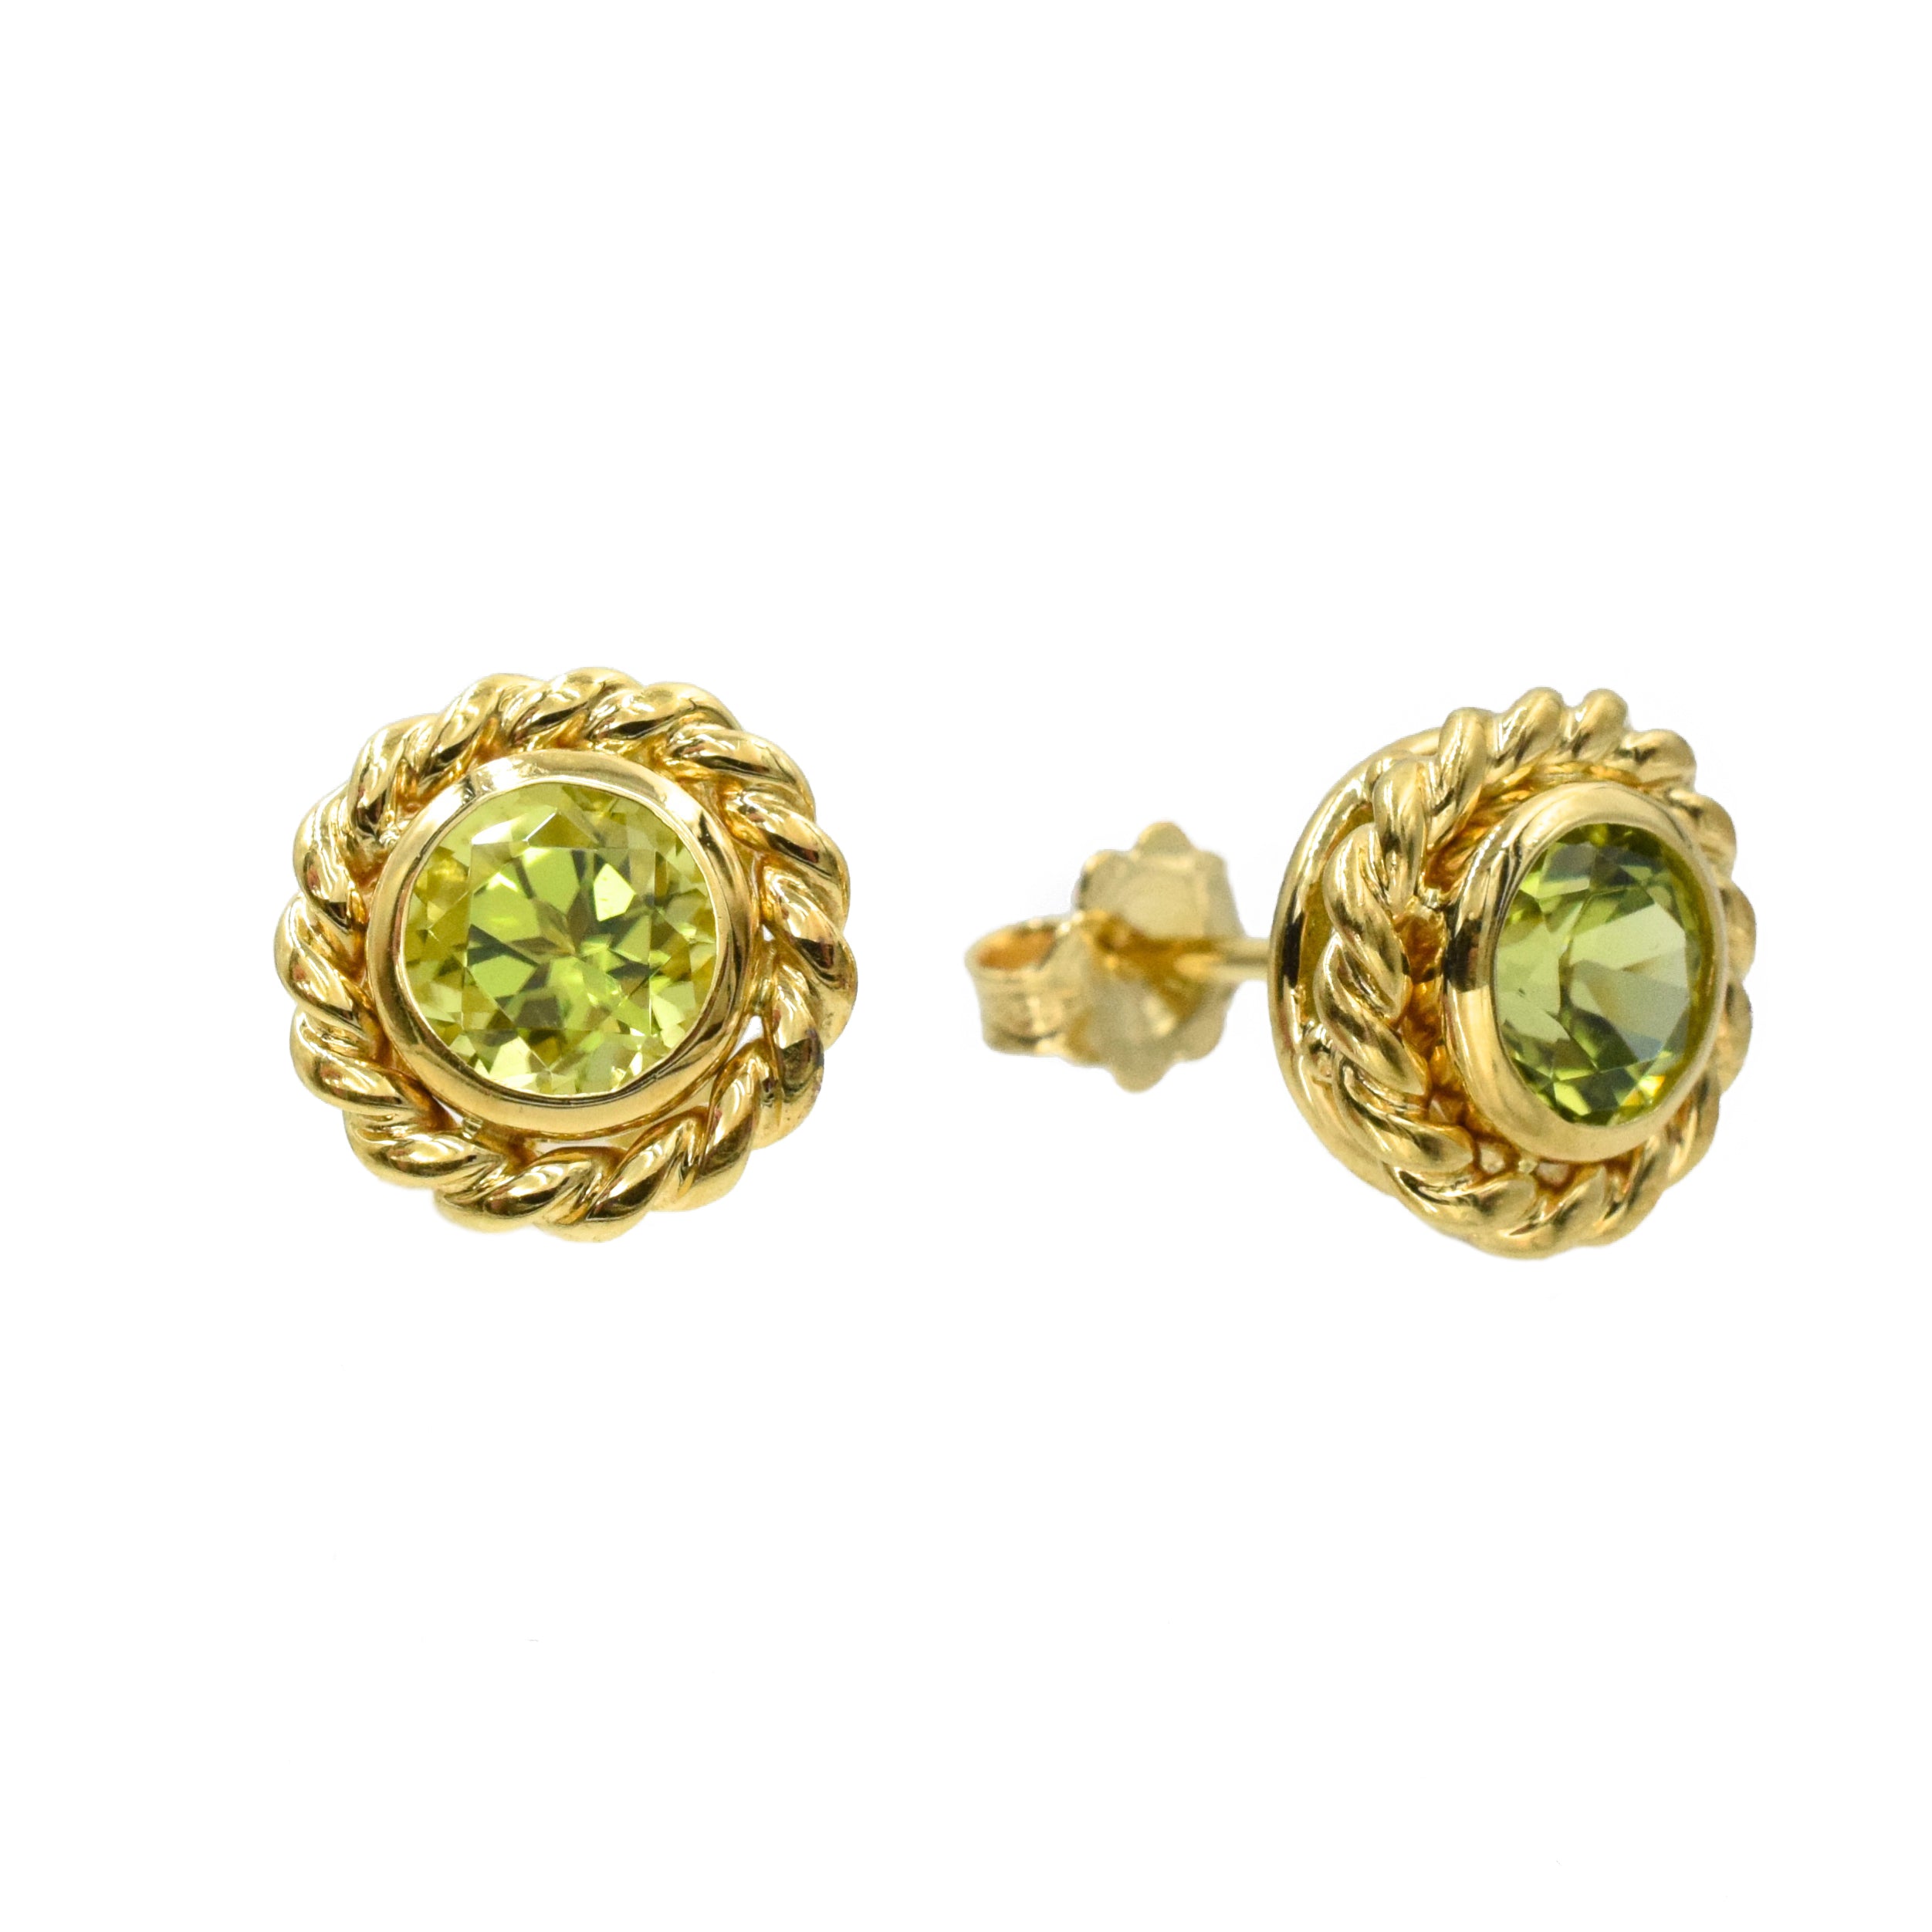 Tiffany & Co 1.60ct Peridot Stud Earrings in 18k Yellow Gold